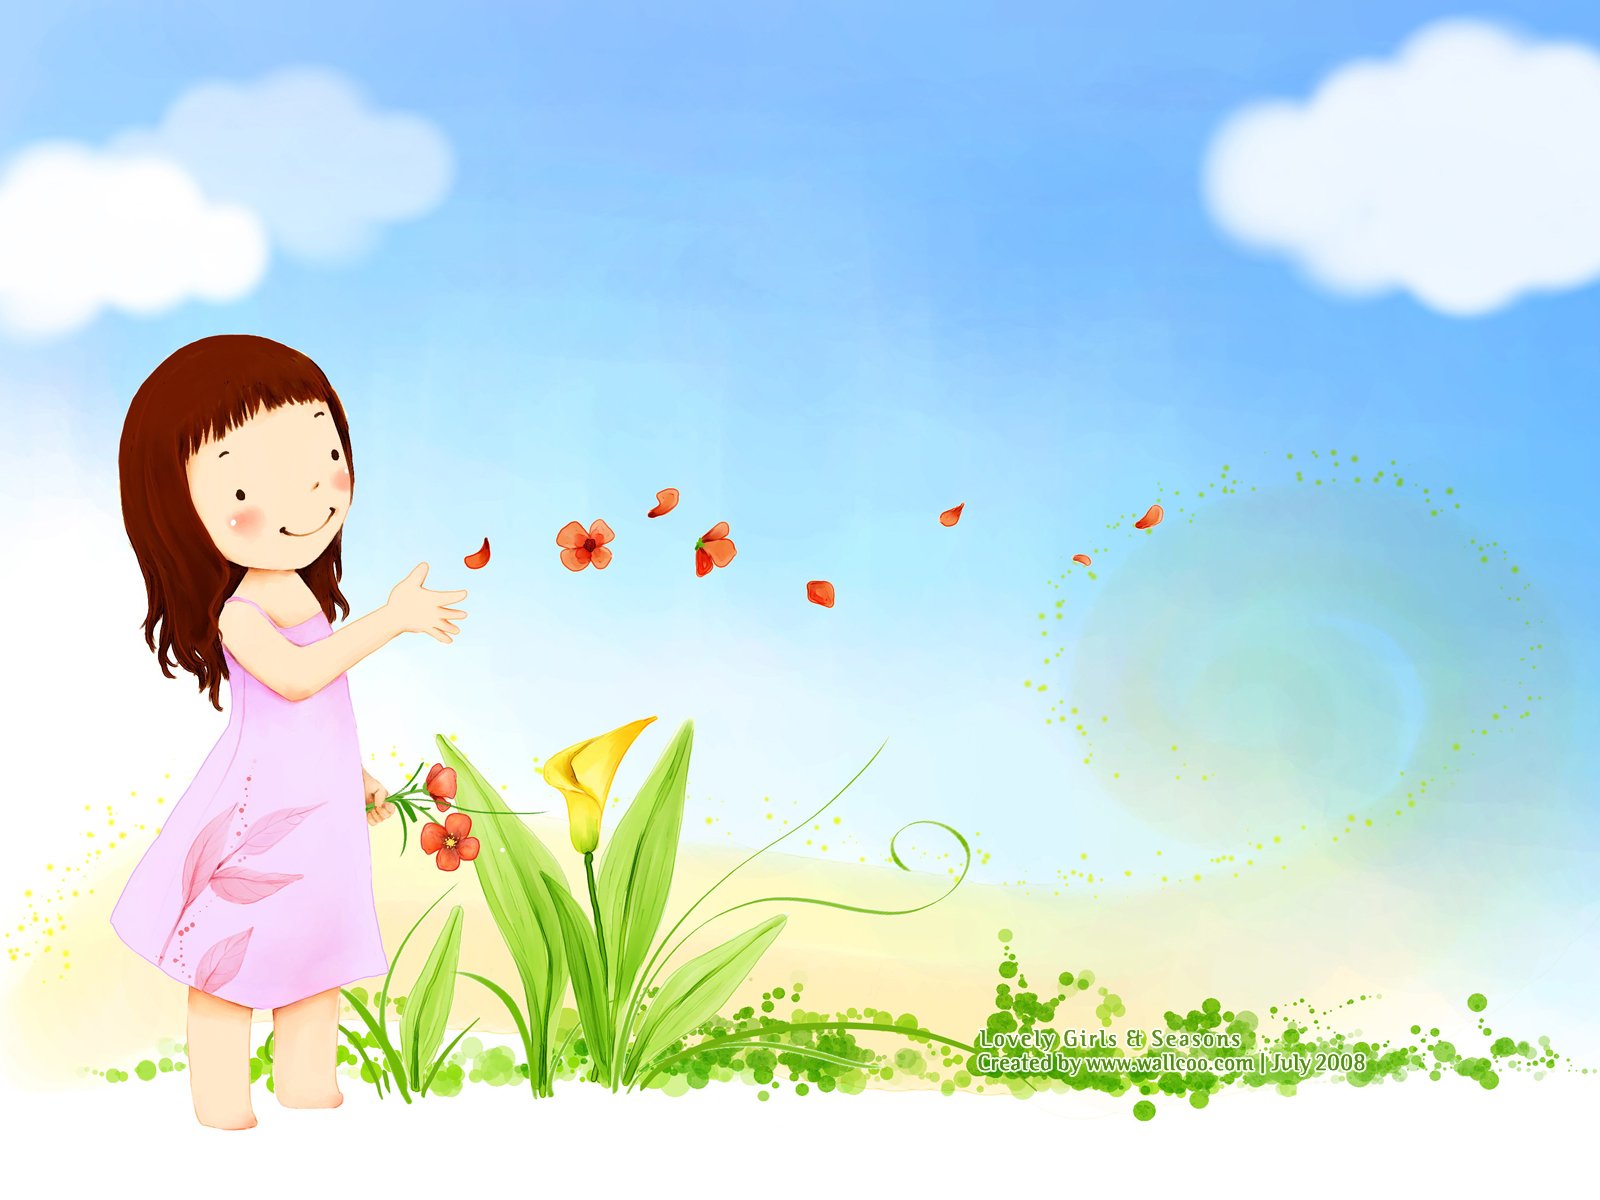 壁纸1400×1050韩国卡通小女孩插画壁纸,韩国儿童插画-可爱小女孩壁纸图片-插画壁纸-插画图片素材-桌面壁纸